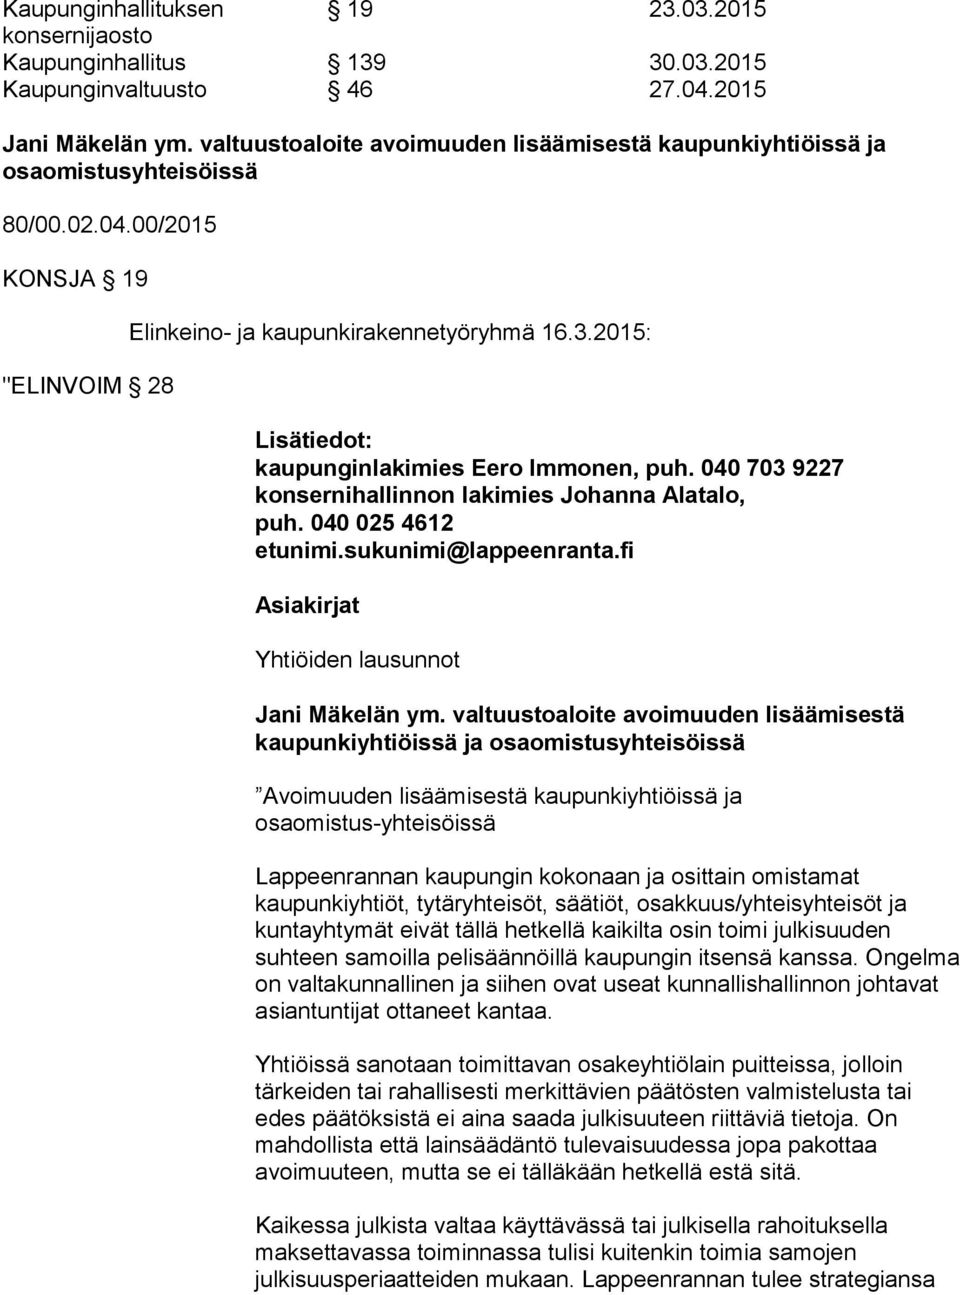 2015: Lisätiedot: kaupunginlakimies Eero Immonen, puh. 040 703 9227 konsernihallinnon lakimies Johanna Alatalo, puh. 040 025 4612 etunimi.sukunimi@lappeenranta.